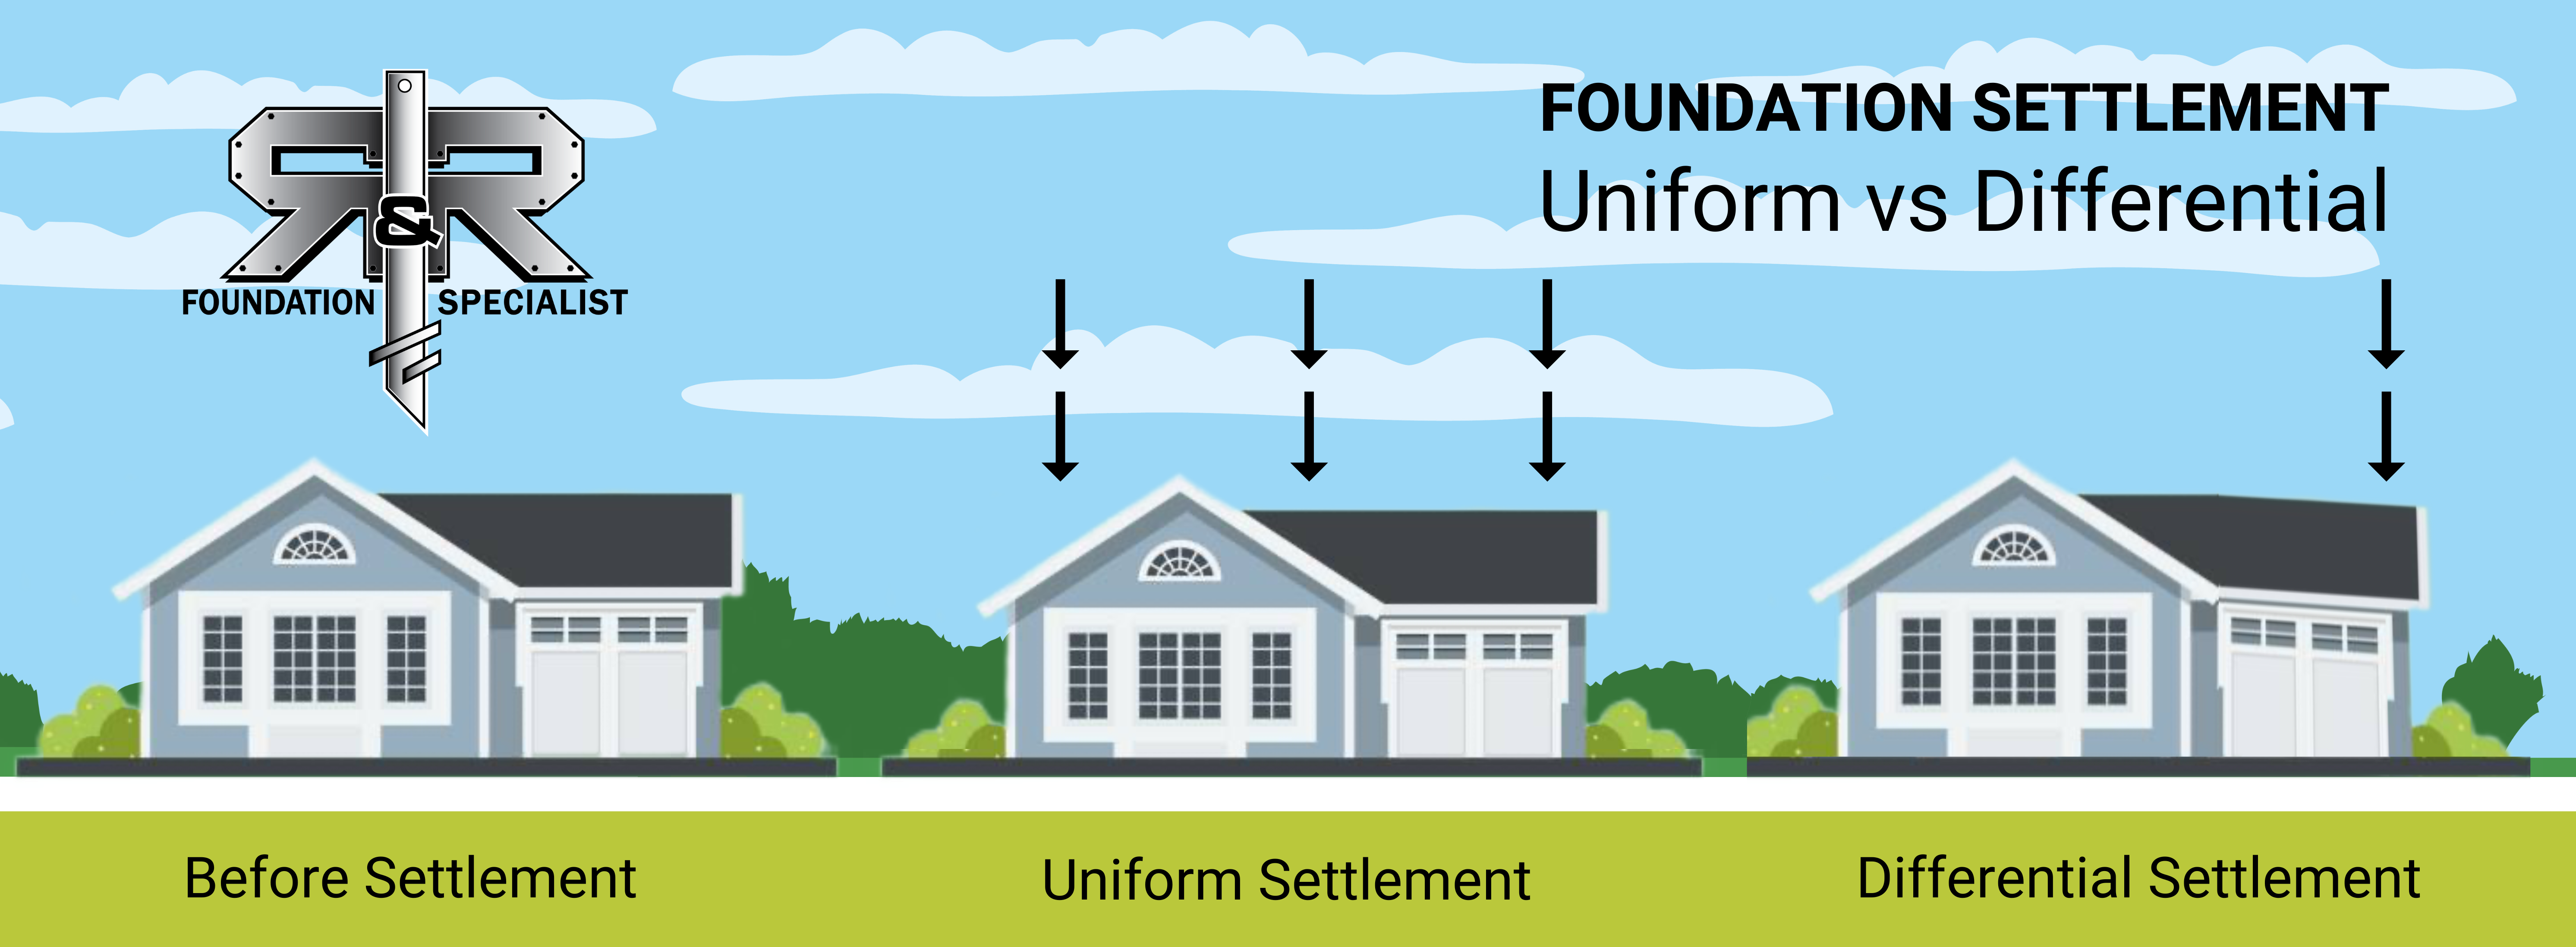 Uniform vs. Differential Foundation Settlement | See the signs of foundation settlement impact